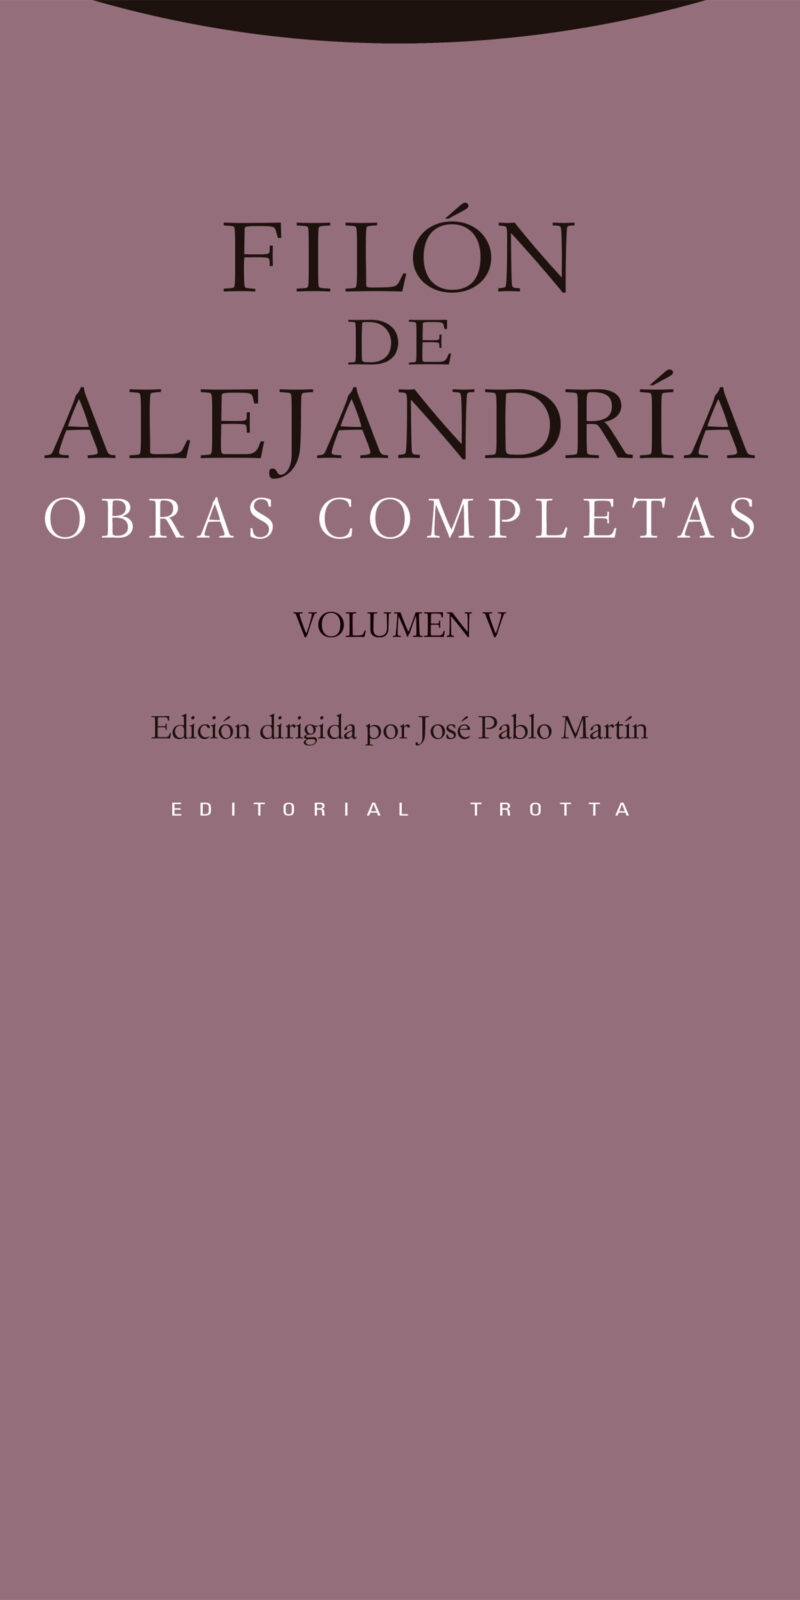 Obras Completas Vol. V. Filón de Alejandría